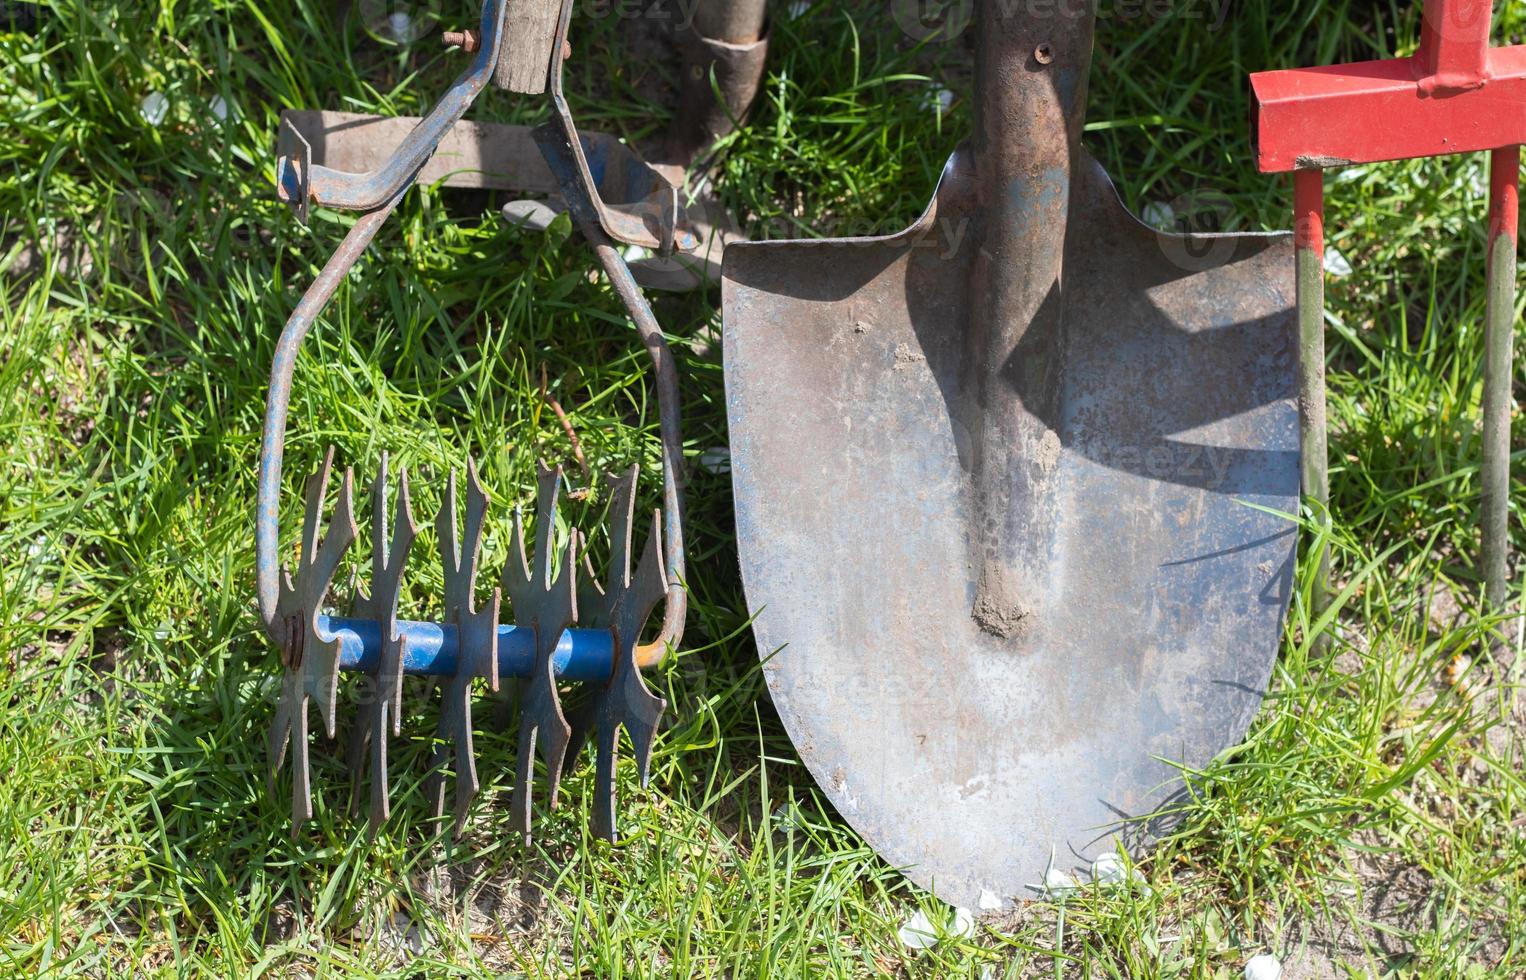 outils de jardinage. outils de jardin sur le fond d'un jardin dans l'herbe verte. outil de travail d'été. pelle, fourchette et levure chimique empilés dans le jardin à l'extérieur. le concept d'outils de jardinage. photo